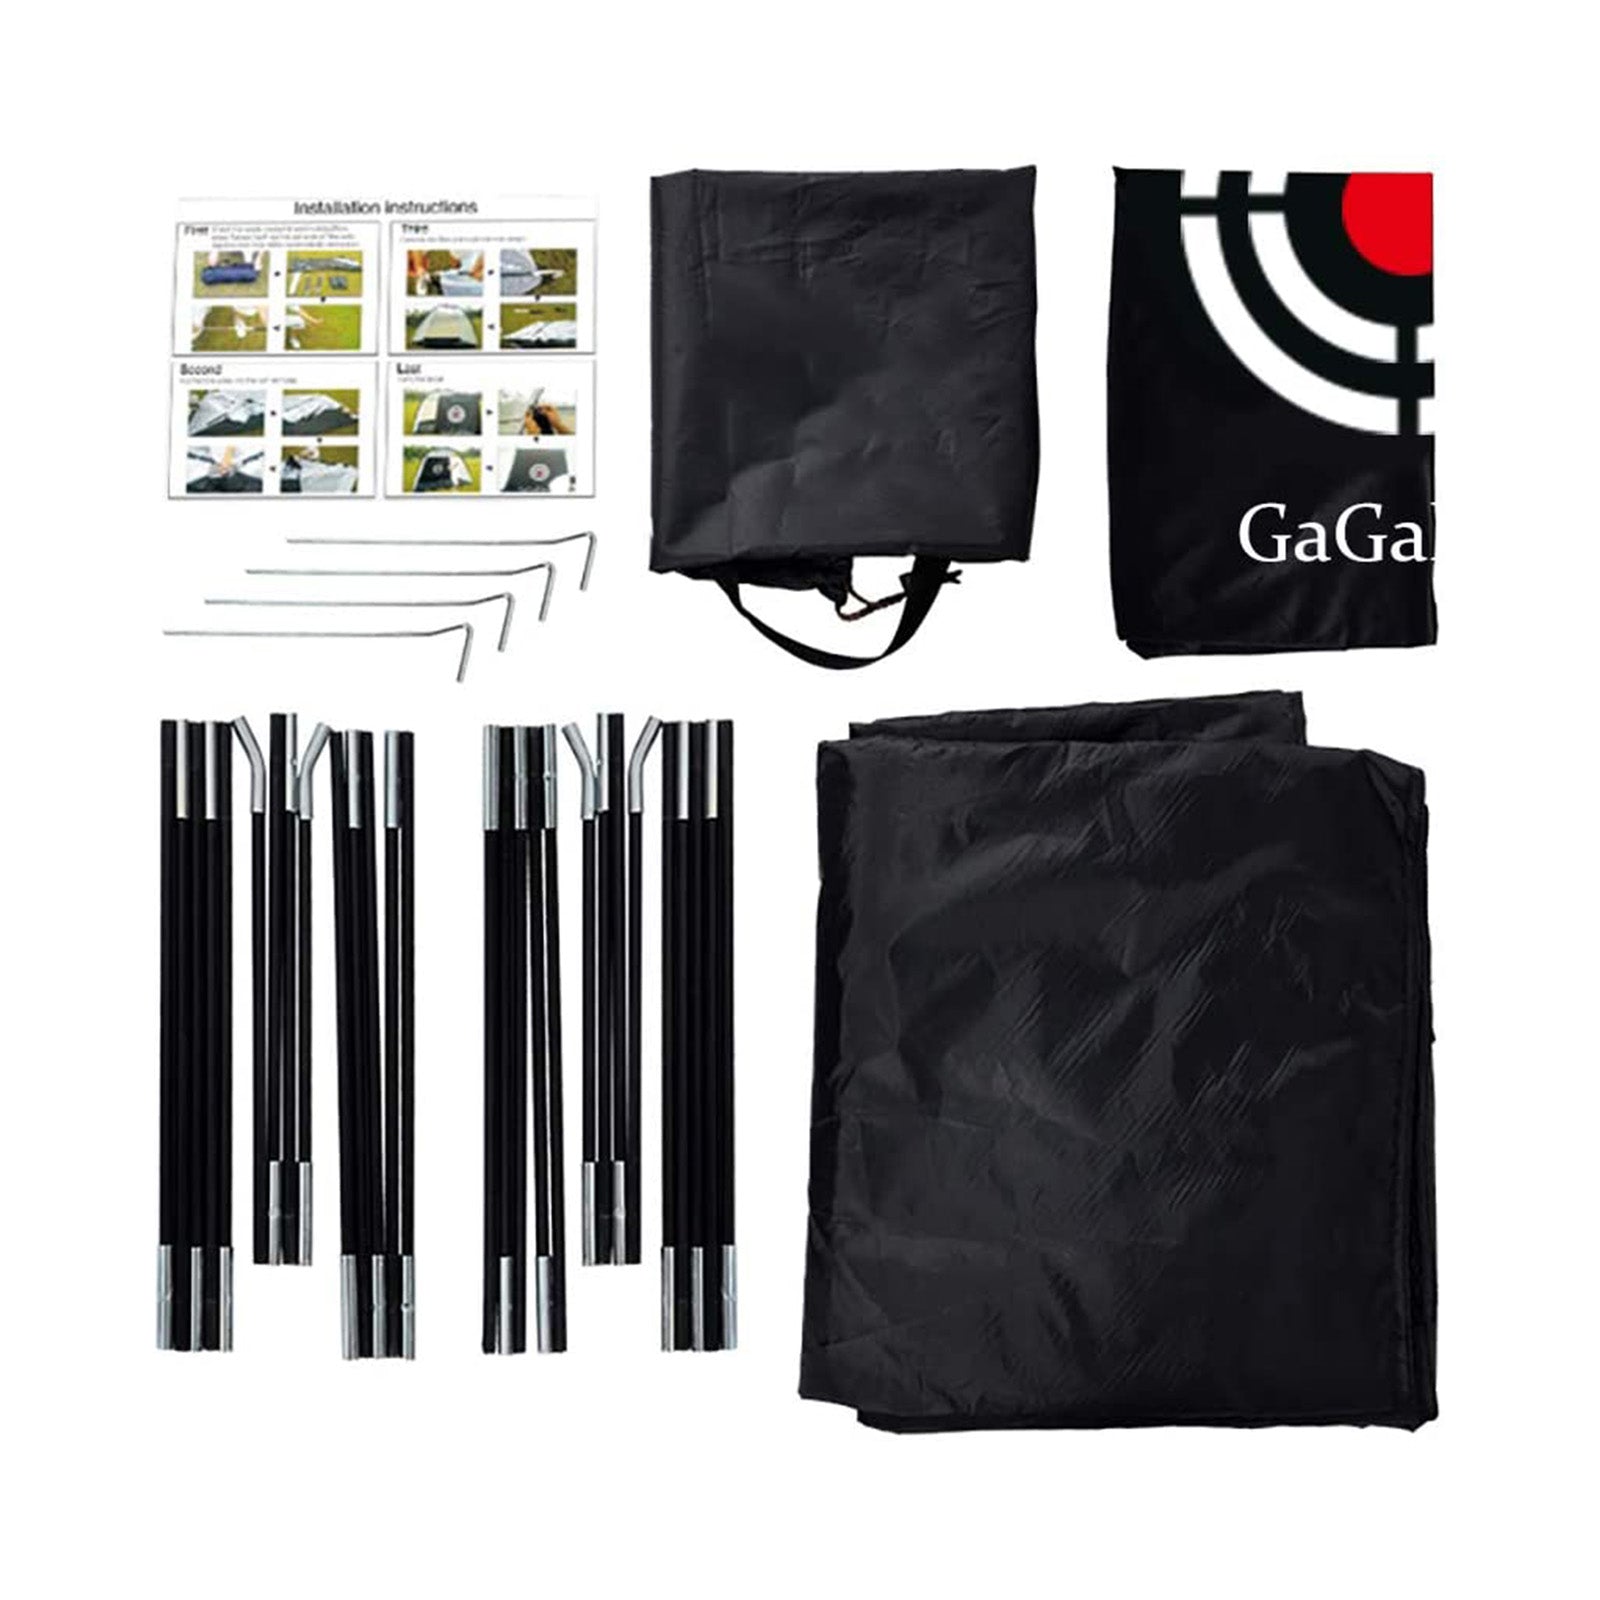 Galieo12' X 7'X 6.6' 뒷마당 드라이빙 골프 네트/흰색 텐트 네트